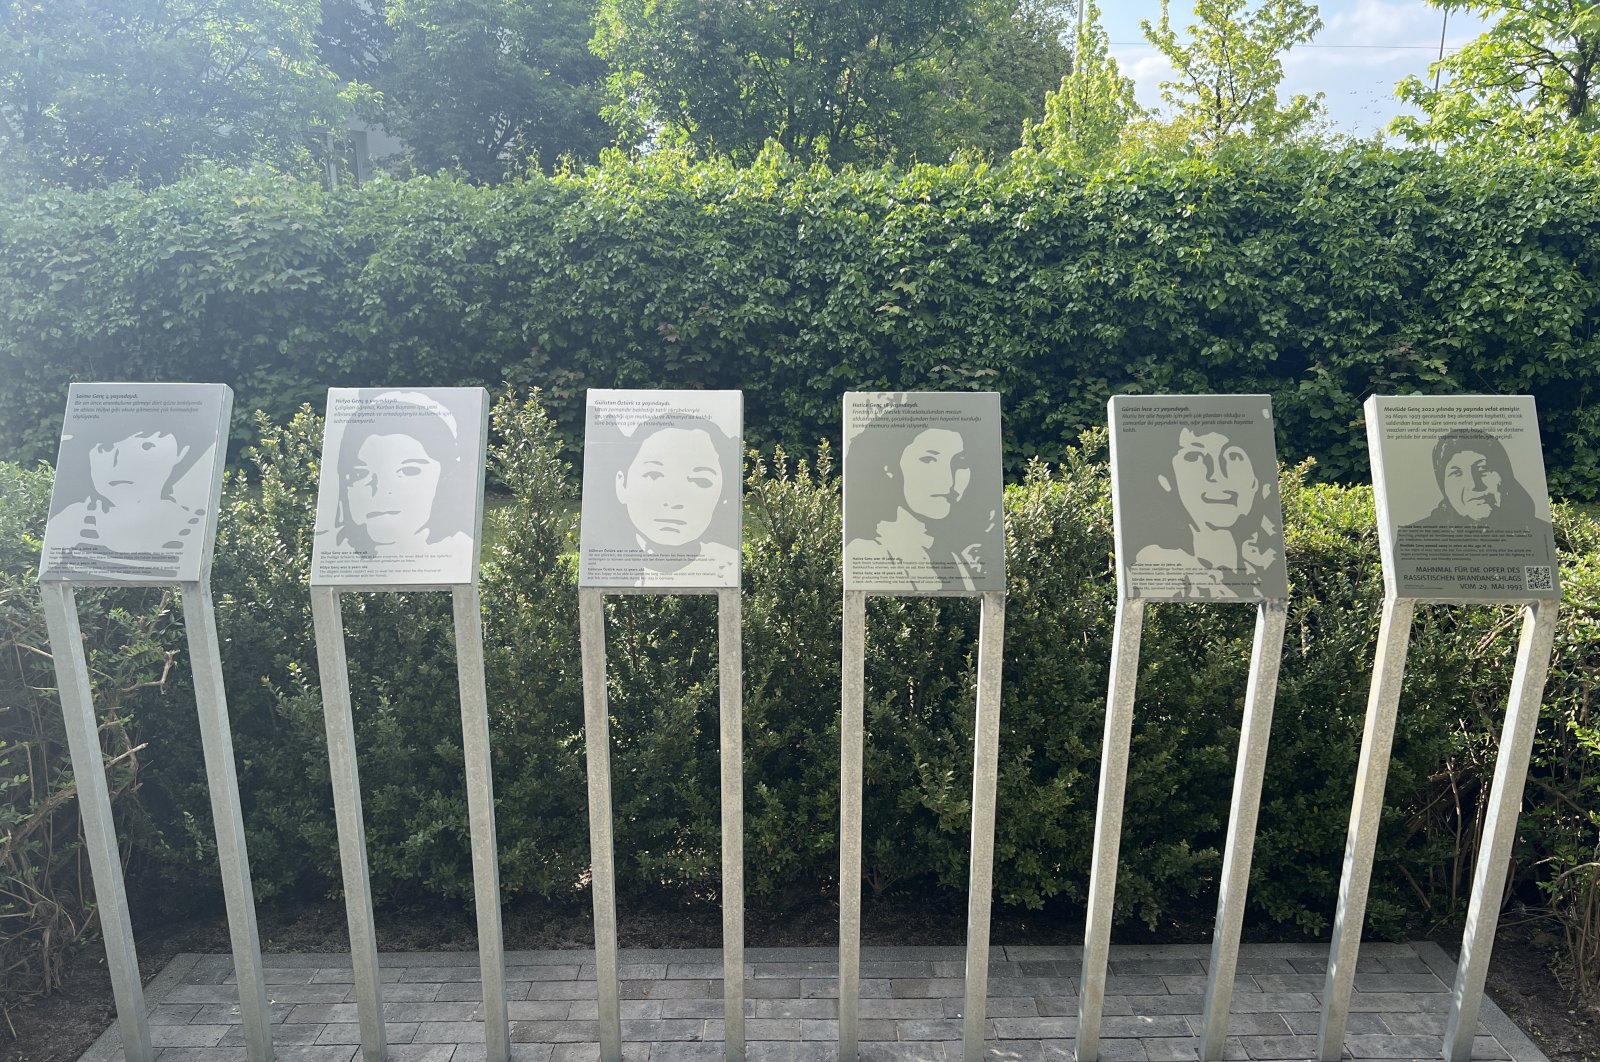 Der deutsche Gesetzgeber gedenkt der türkischen Opfer des Anschlags von 1993